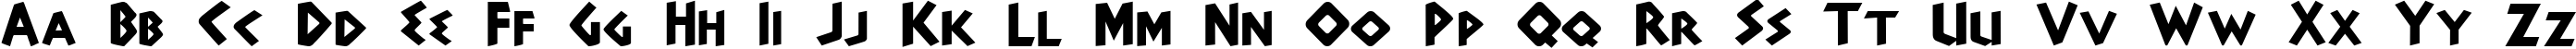 Пример написания английского алфавита шрифтом Adonais Regular